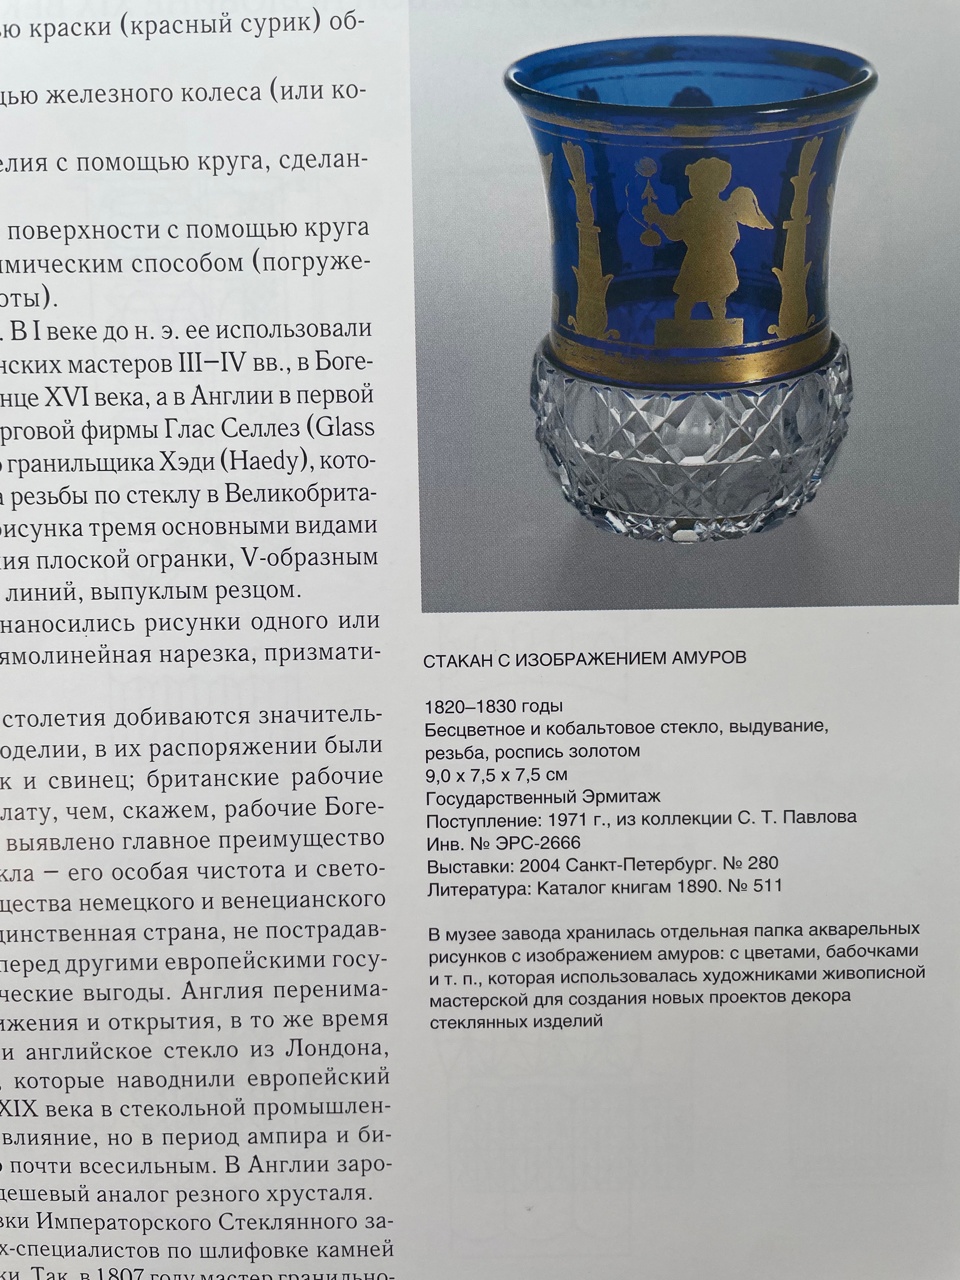 (Императорский Стеклянный завод) Бокал с гранью «простой алмаз».<br>Россия, Императорский стеклянный завод, 1820-1830-е годы.